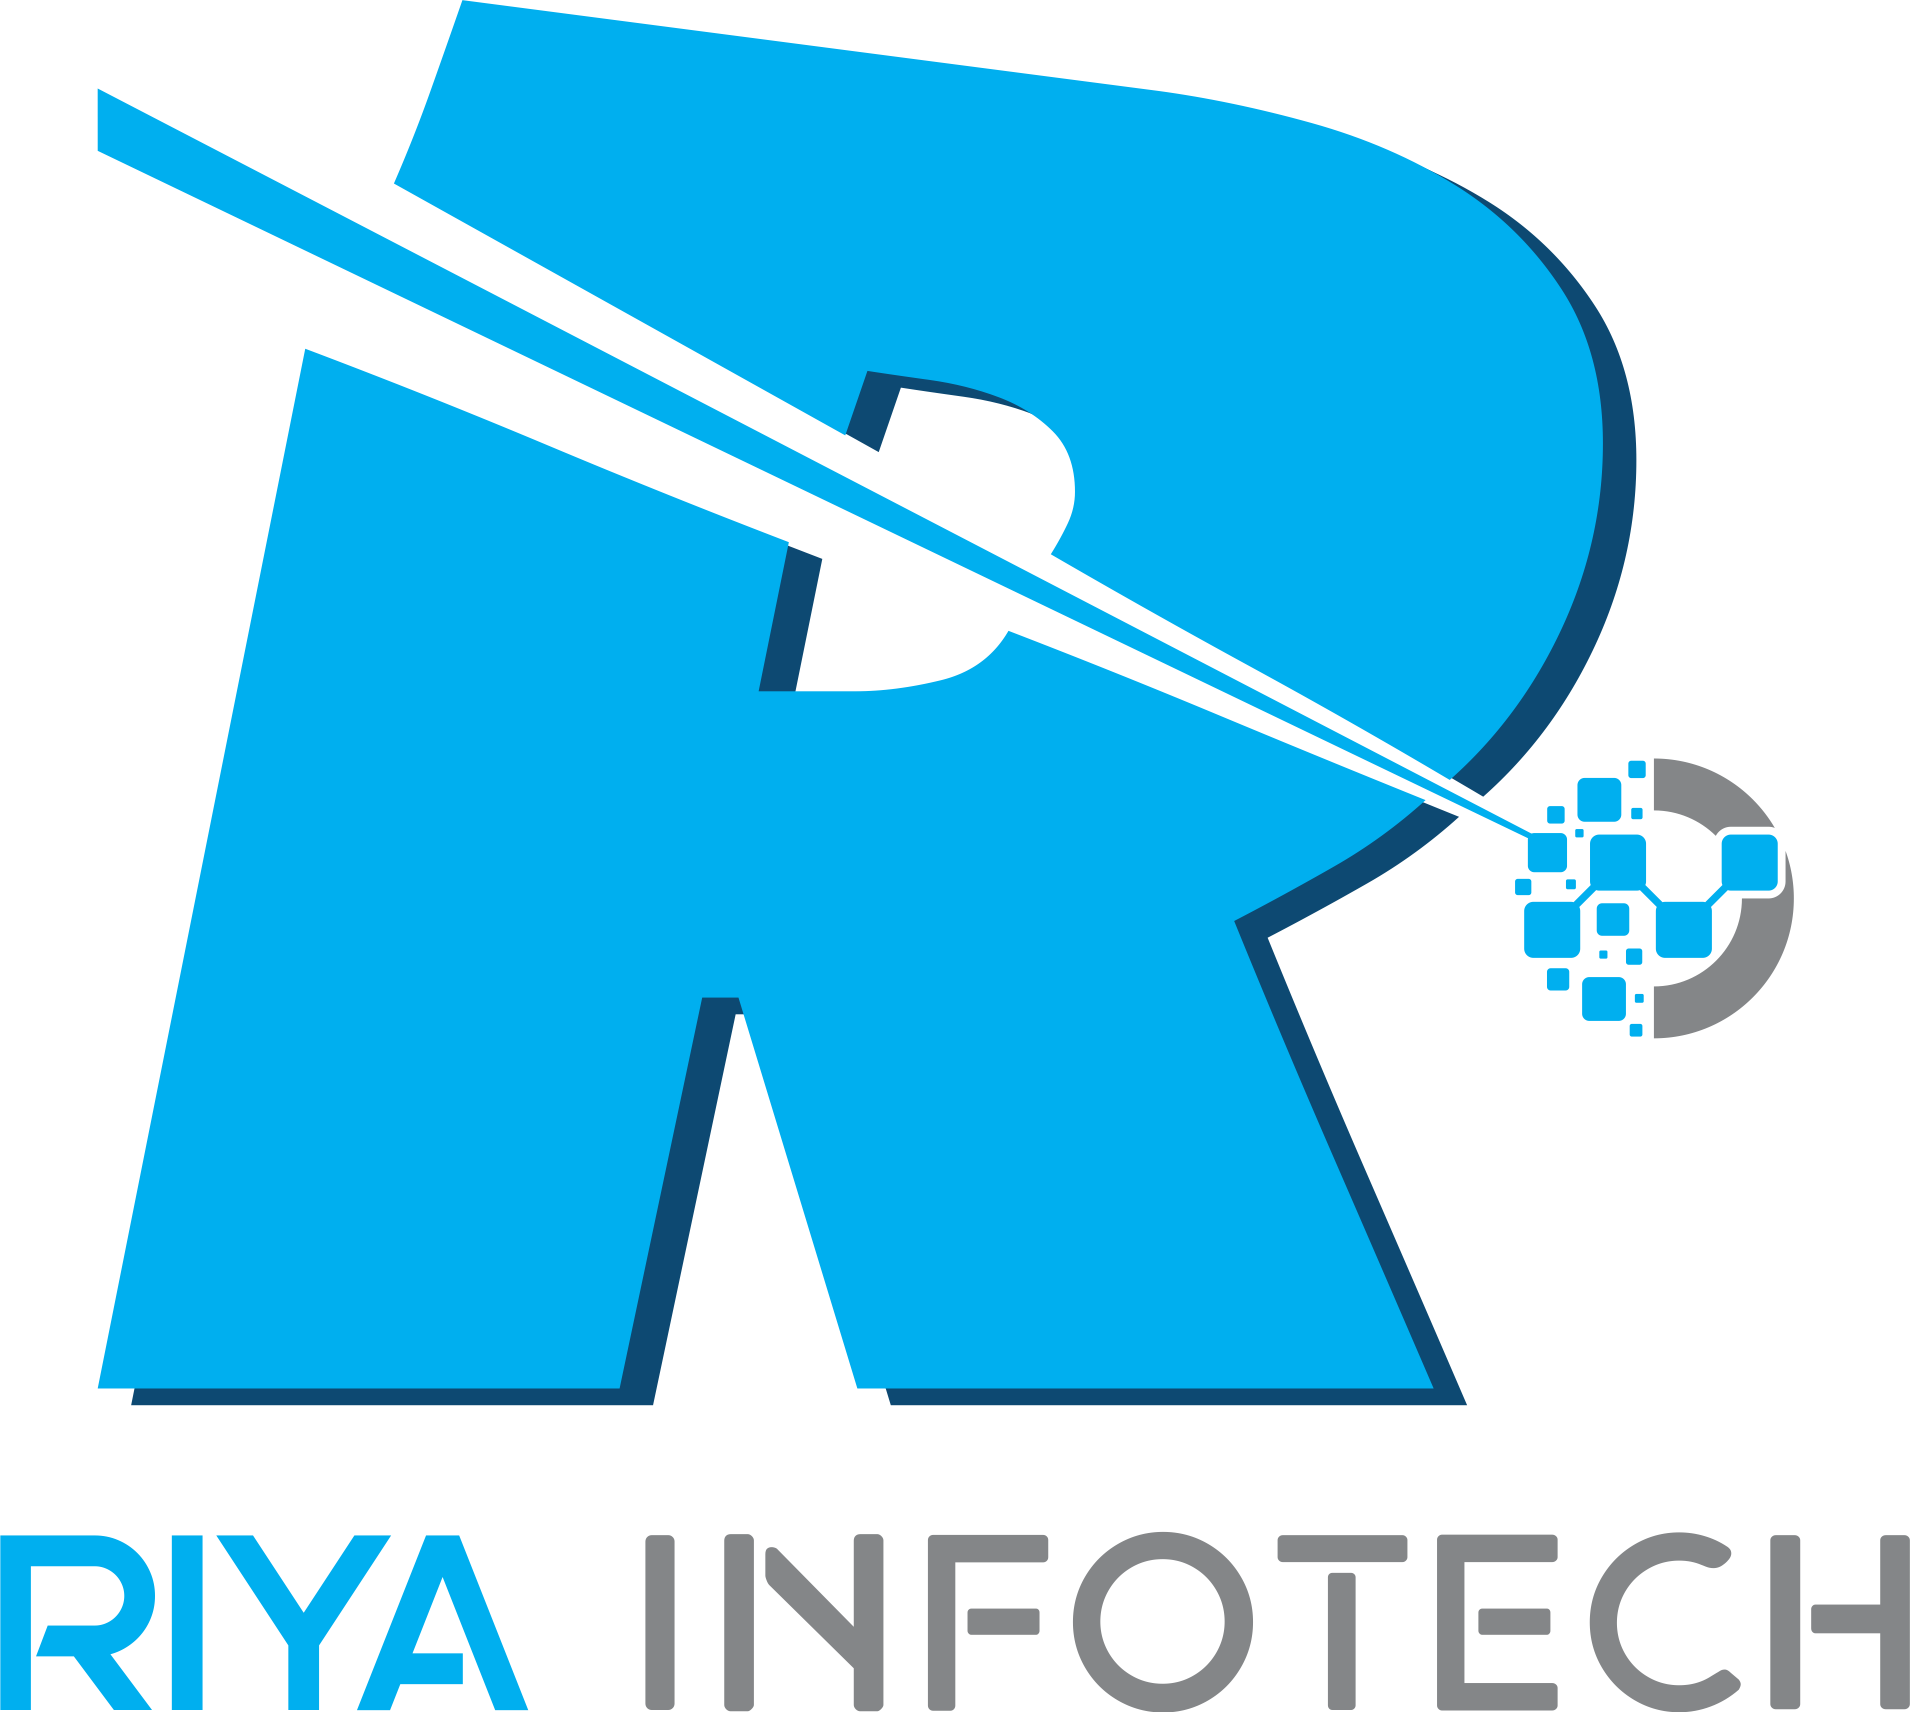 Riya Infotech